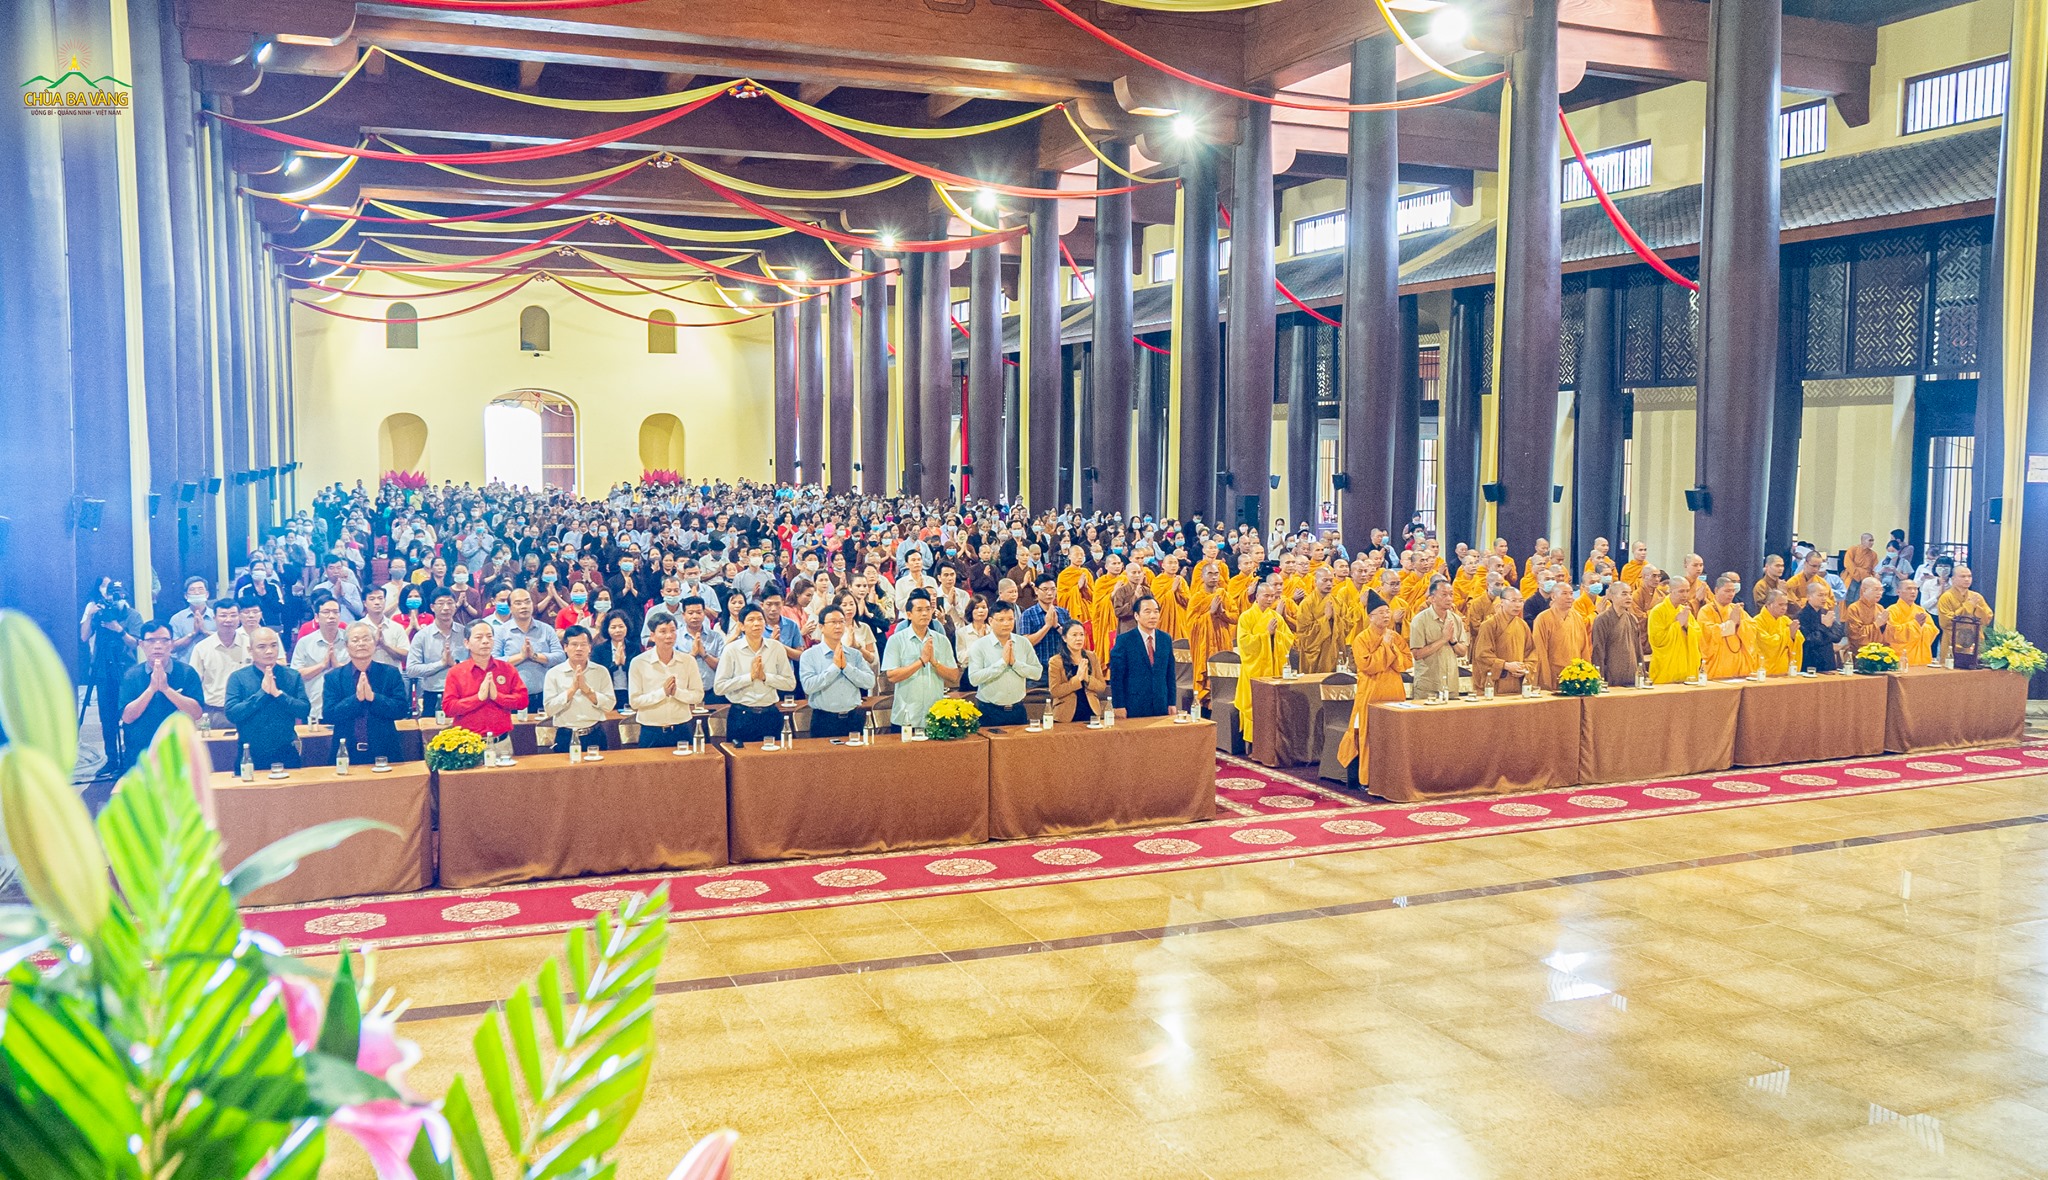   Tại cung Trúc Lâm - Trung tâm Văn hóa Trúc Lâm Yên Tử, lễ giỗ Đệ nhị Tổ Pháp Loa đã được tổ chức trang nghiêm.  